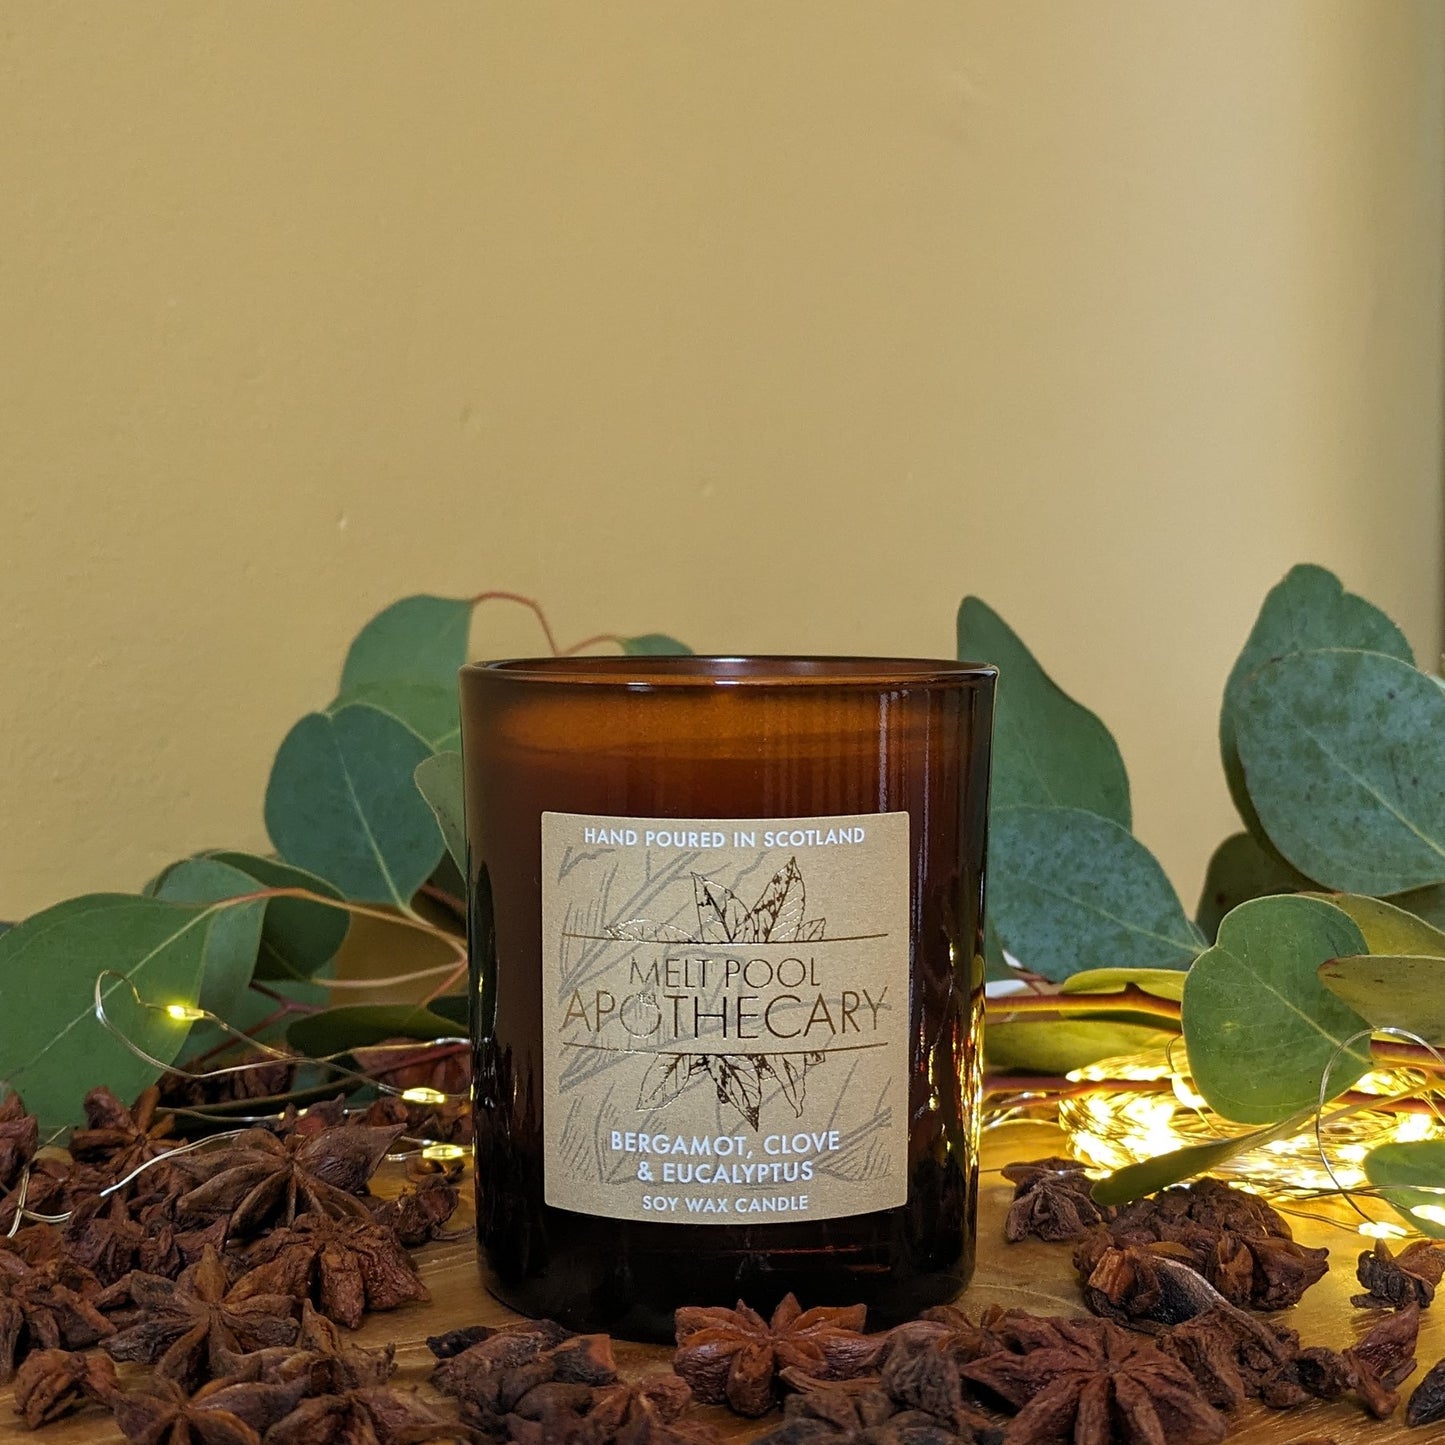 Bergamot, Clove & Eucalyptus- Large Amber Jar Candle